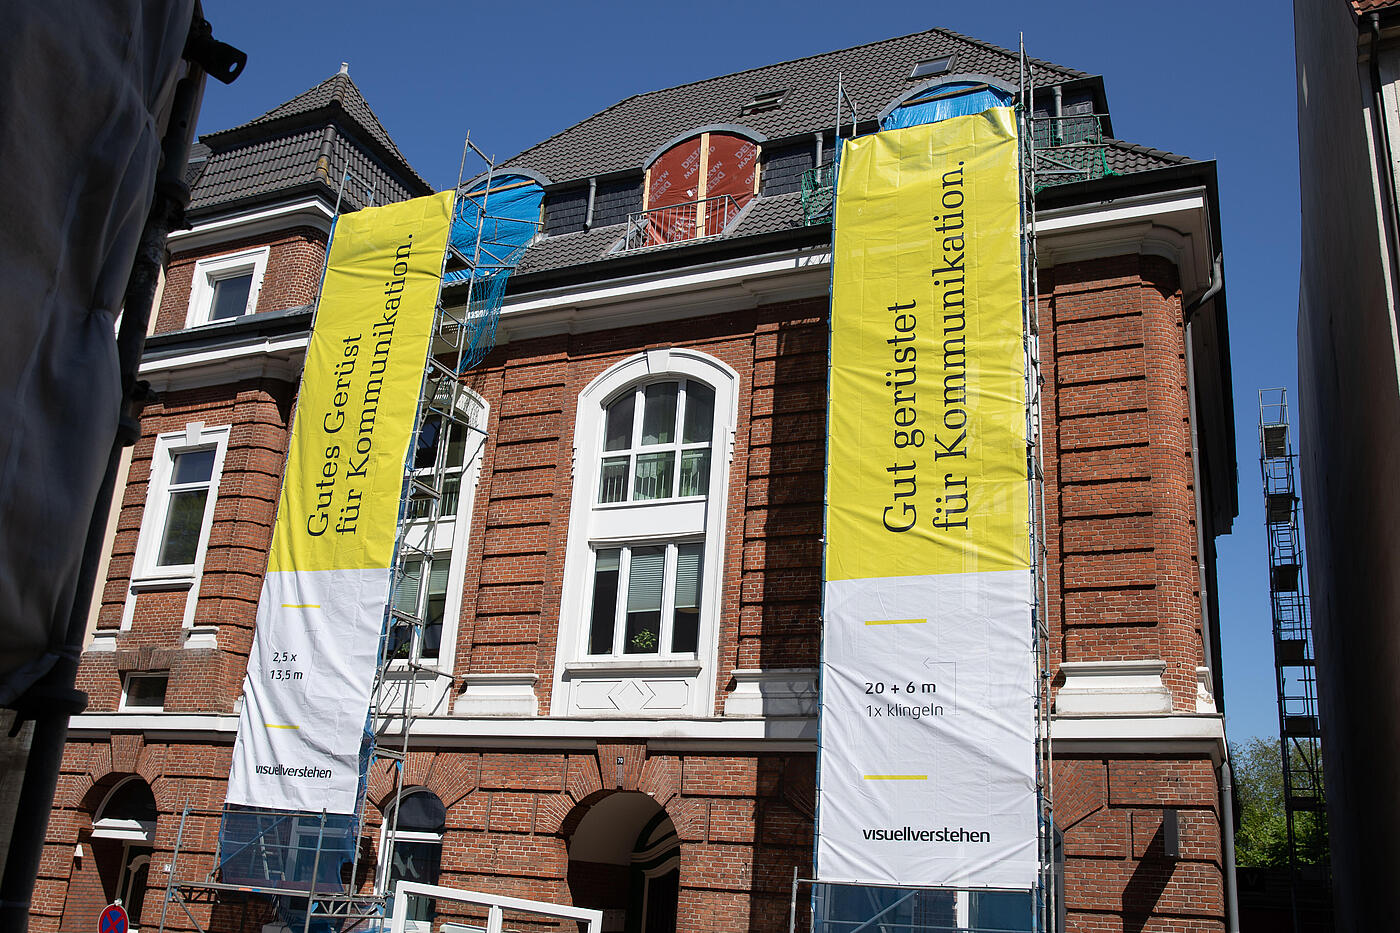 Vor dem visuellverstehen-Gebäude hängen zwei riesige gelbe visuellverstehen-Banner von Baugerüsten herab.